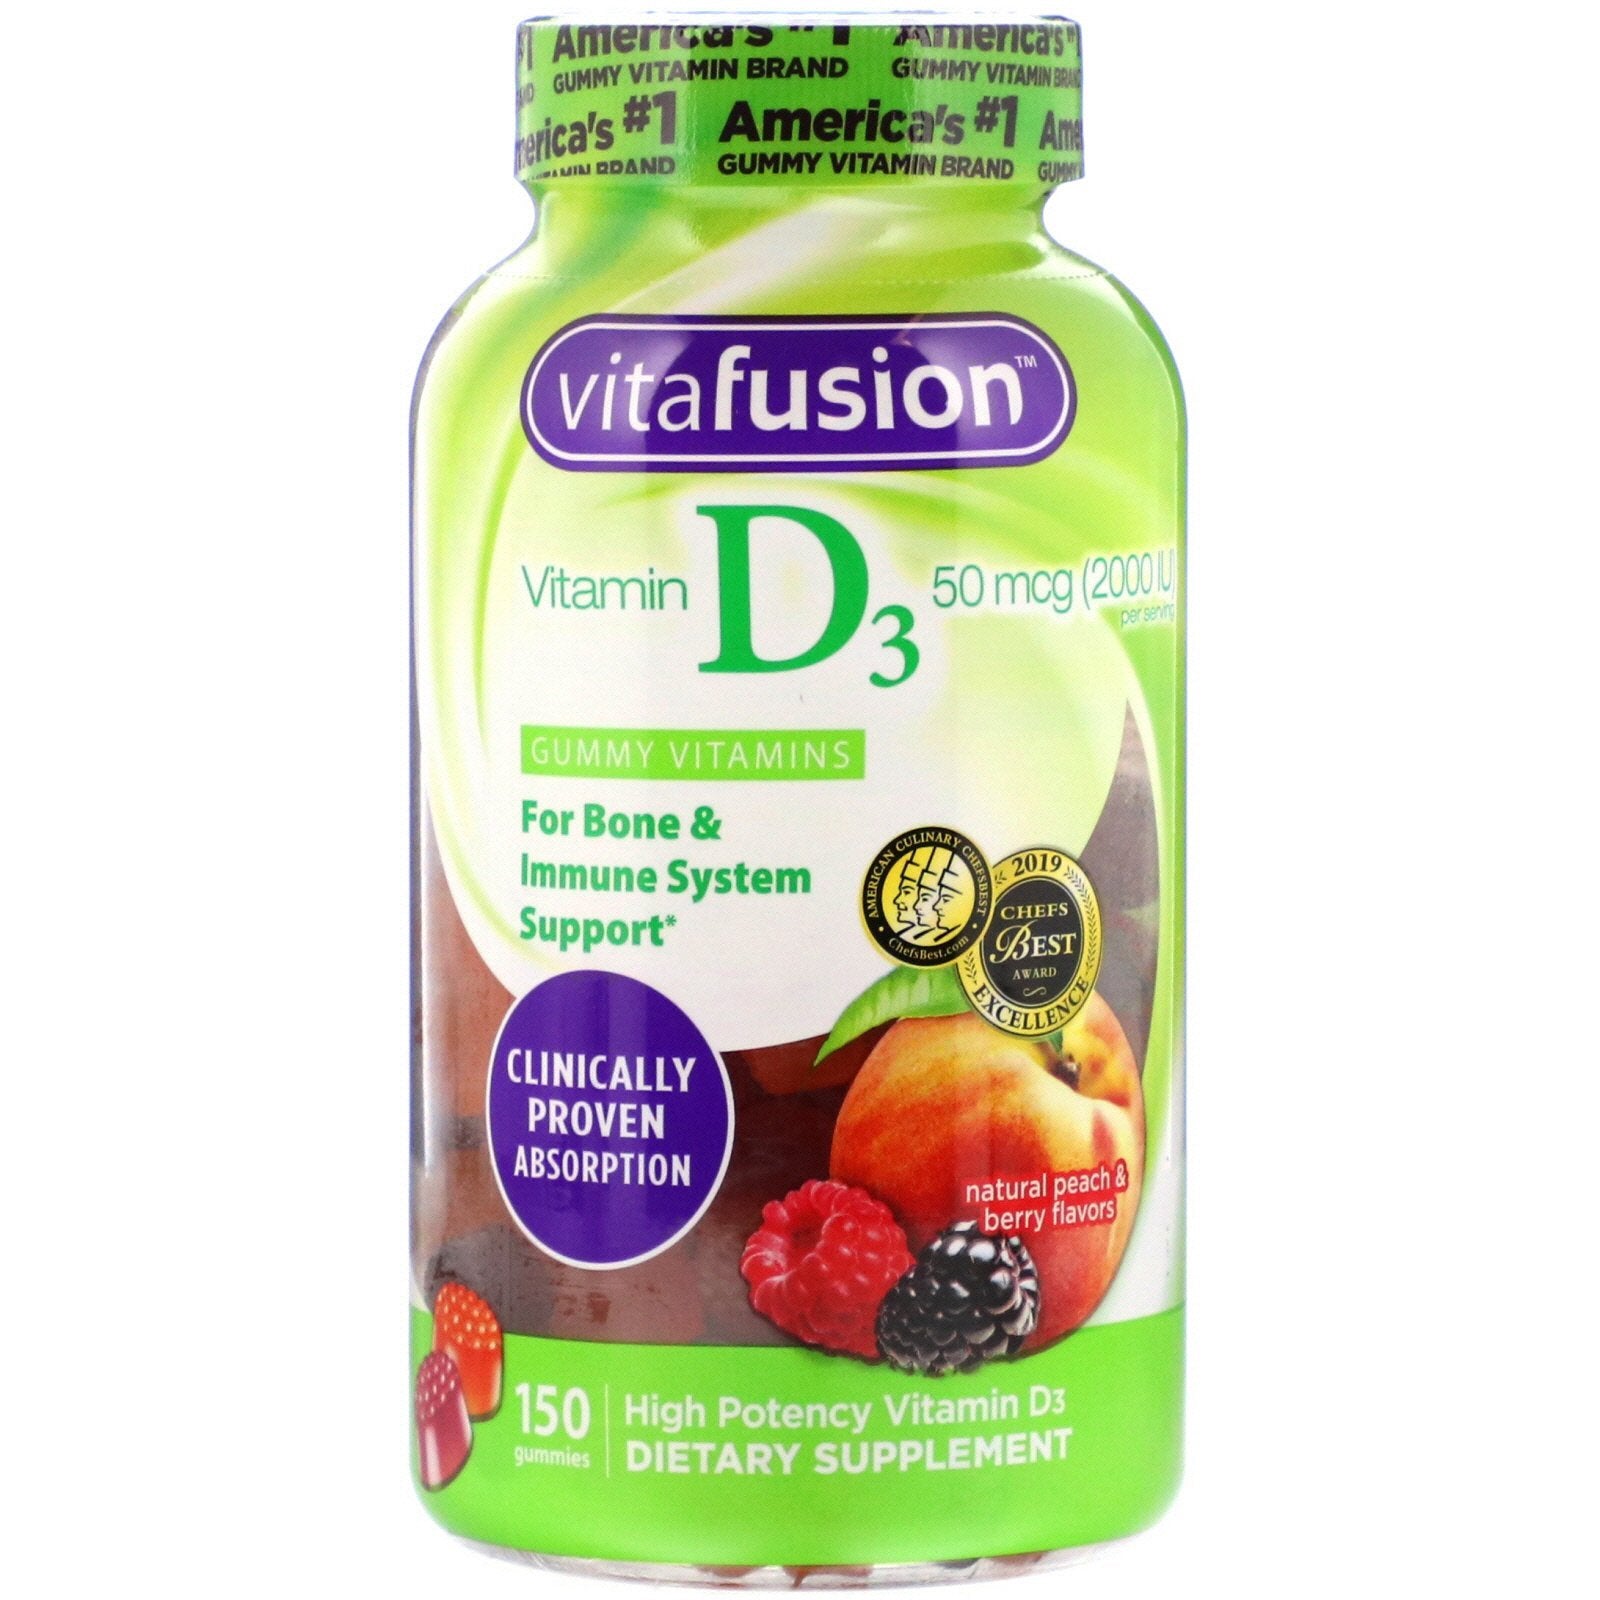 VitaFusion, Vitamin D3, Natural Peach & Berry Flavors, 50 mcg (2,000 IU), 150 Gummies